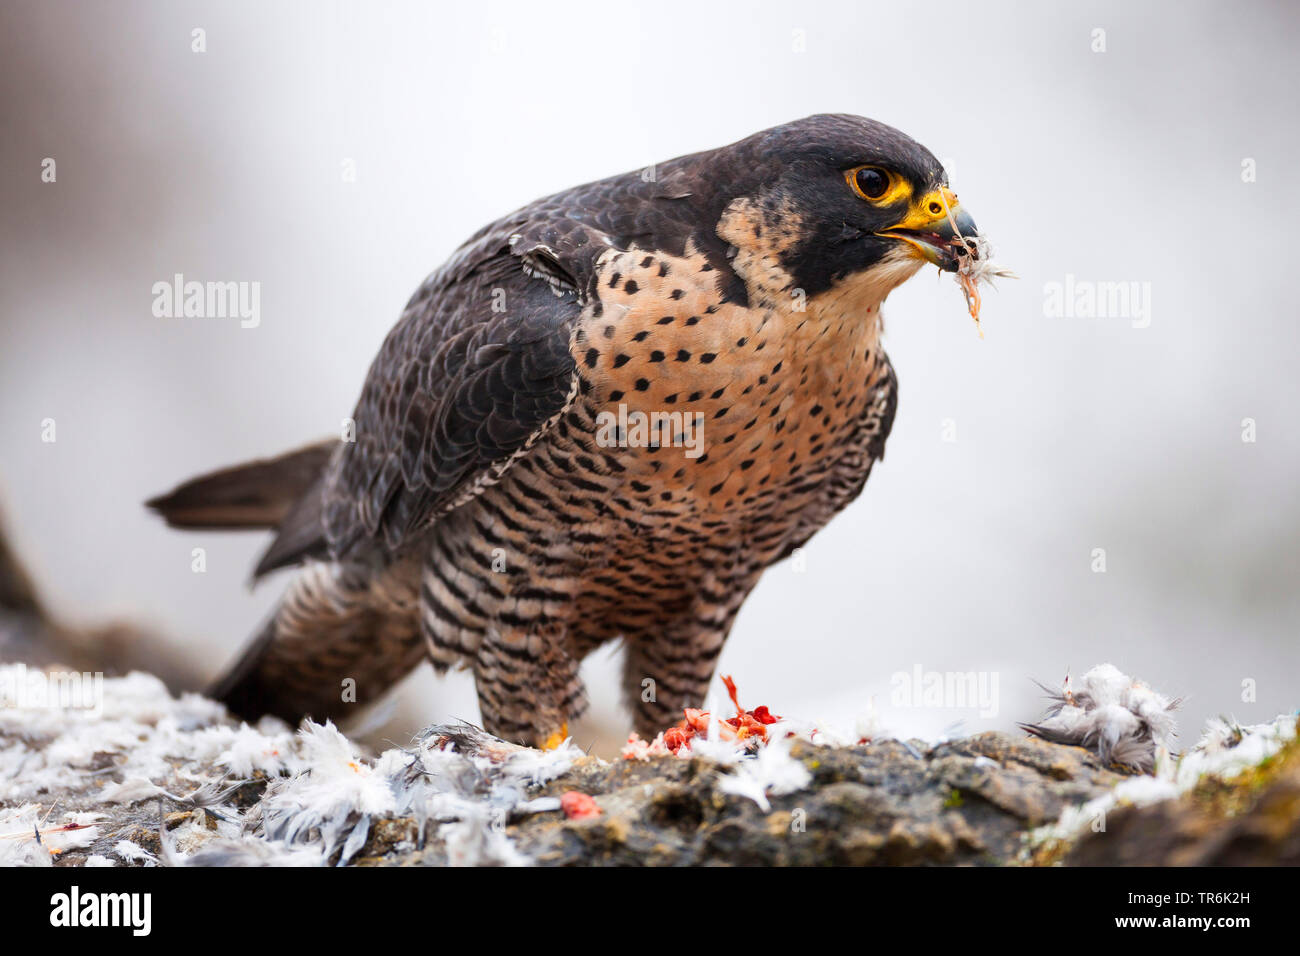 Le faucon pèlerin (Falco peregrinus), assis sur le sol l'alimentation, Allemagne Banque D'Images